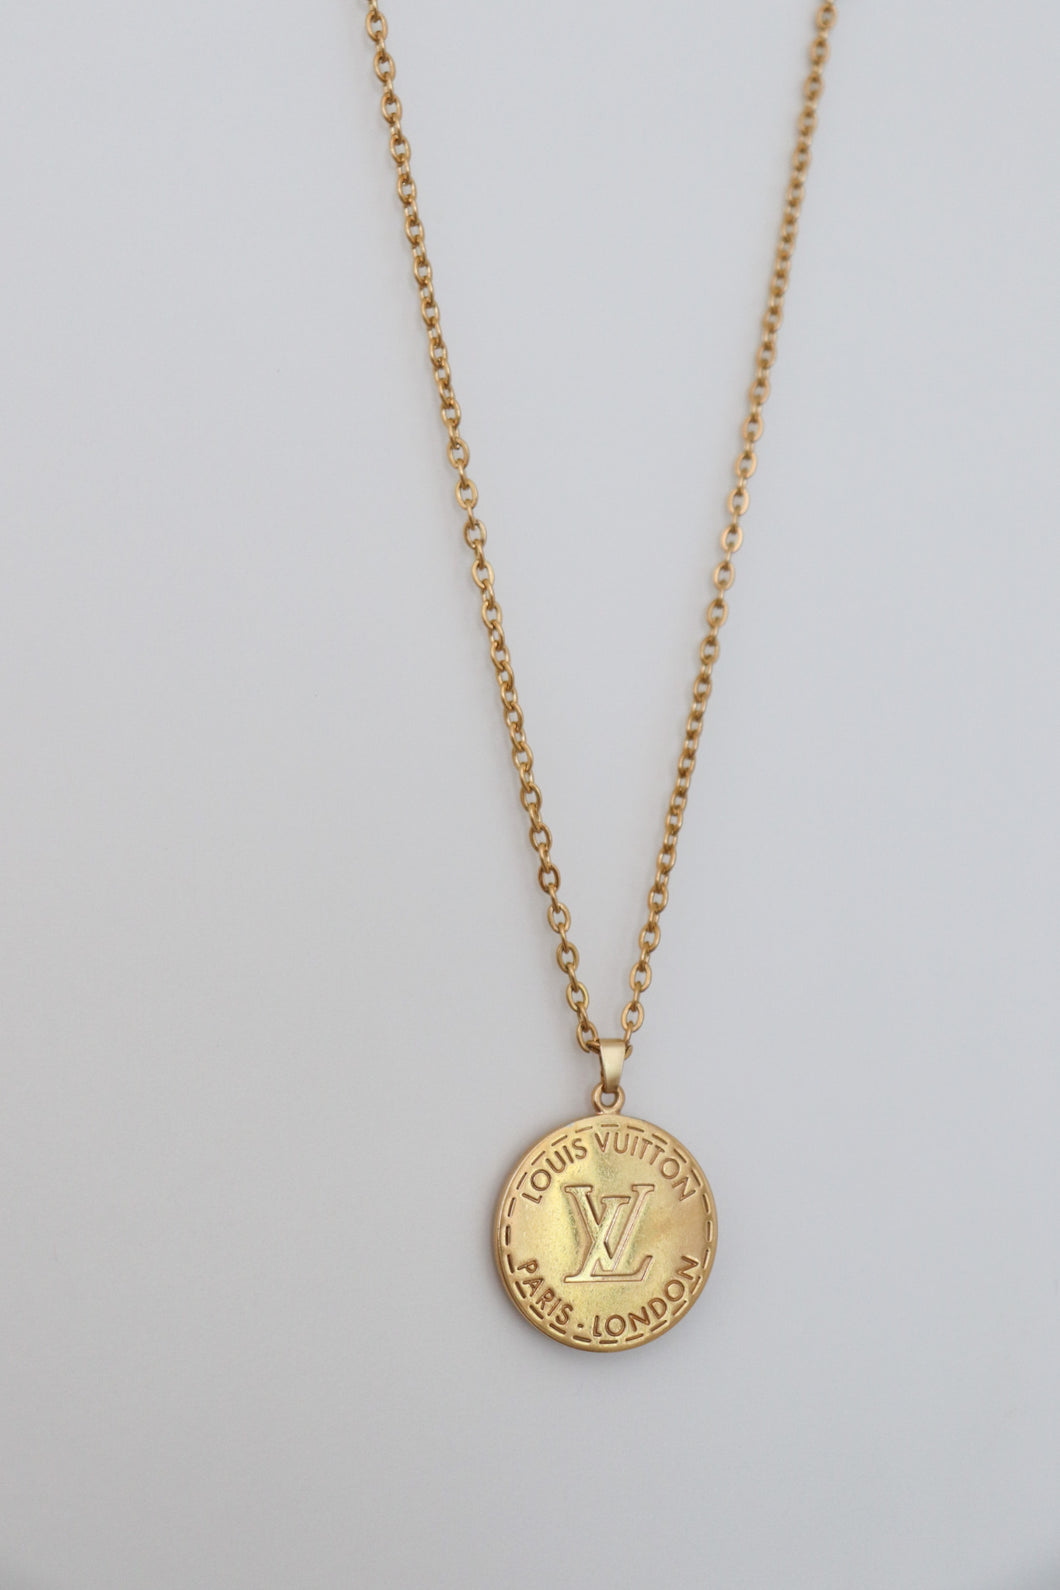 Louis Vuitton double sided golden pendant